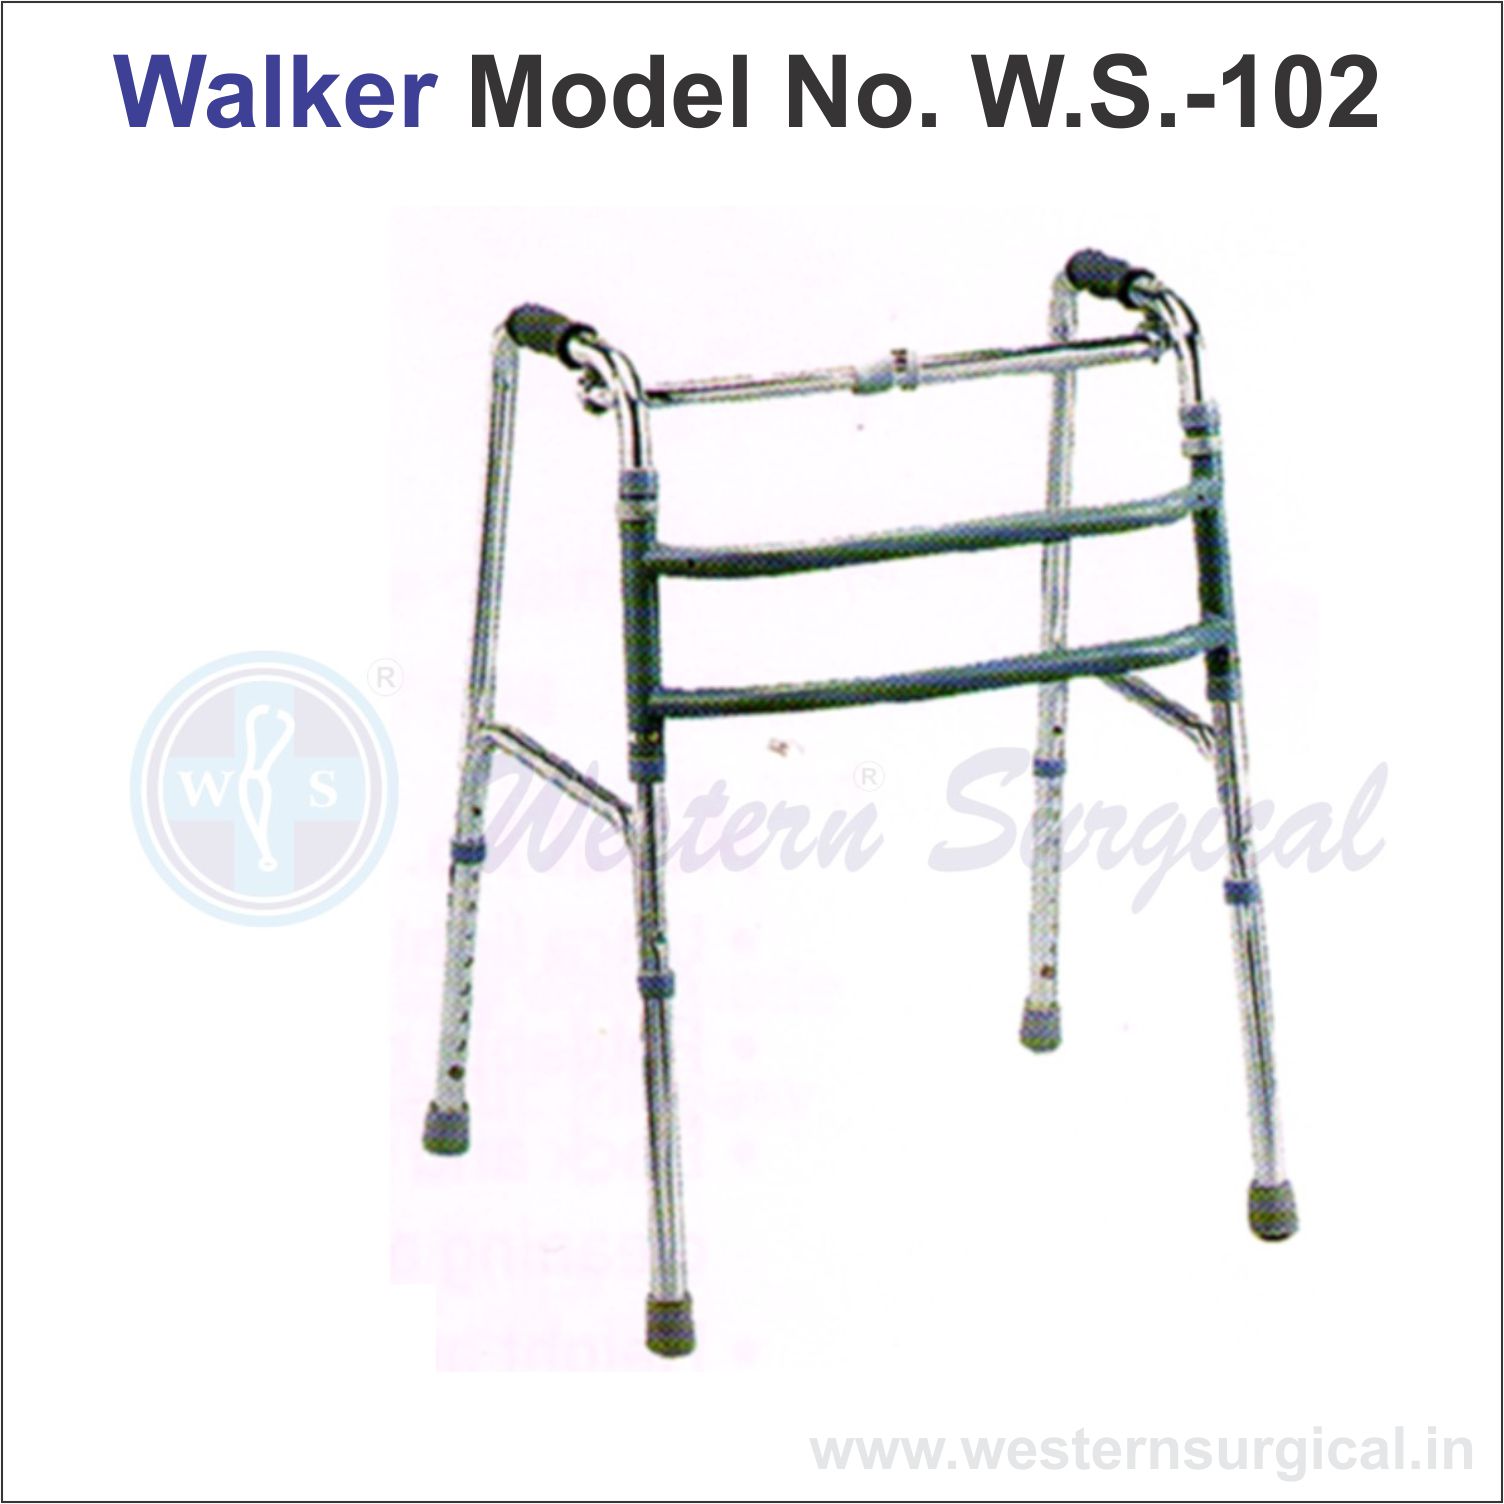 Walker Model No. W.S. - 102